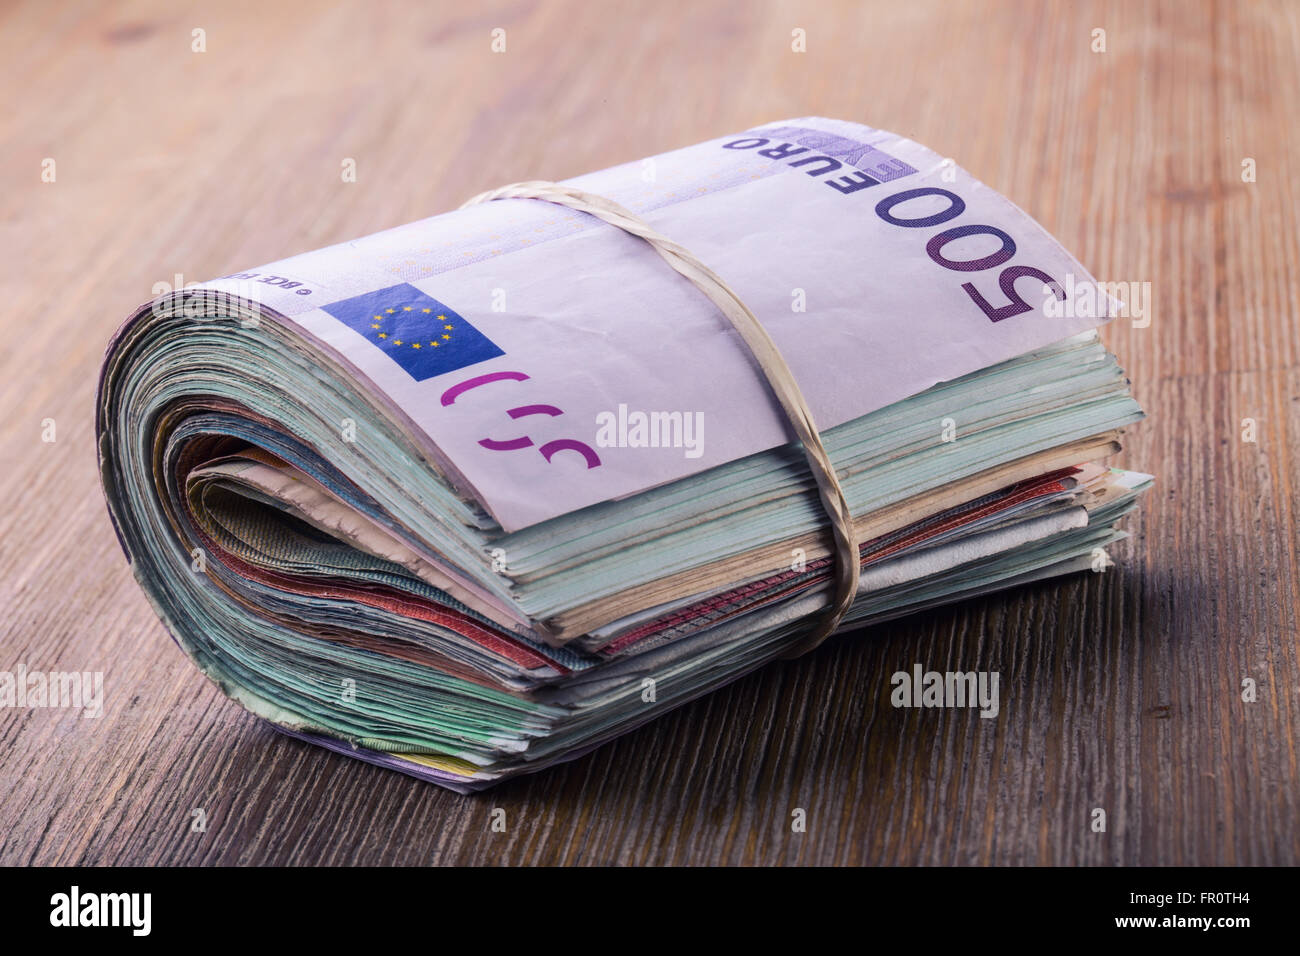 Les Billets En Euros Devise Euro Euro Argent Close Up Of A Mis Les Billets En Euros Sur Table En Bois Photo Stock Alamy